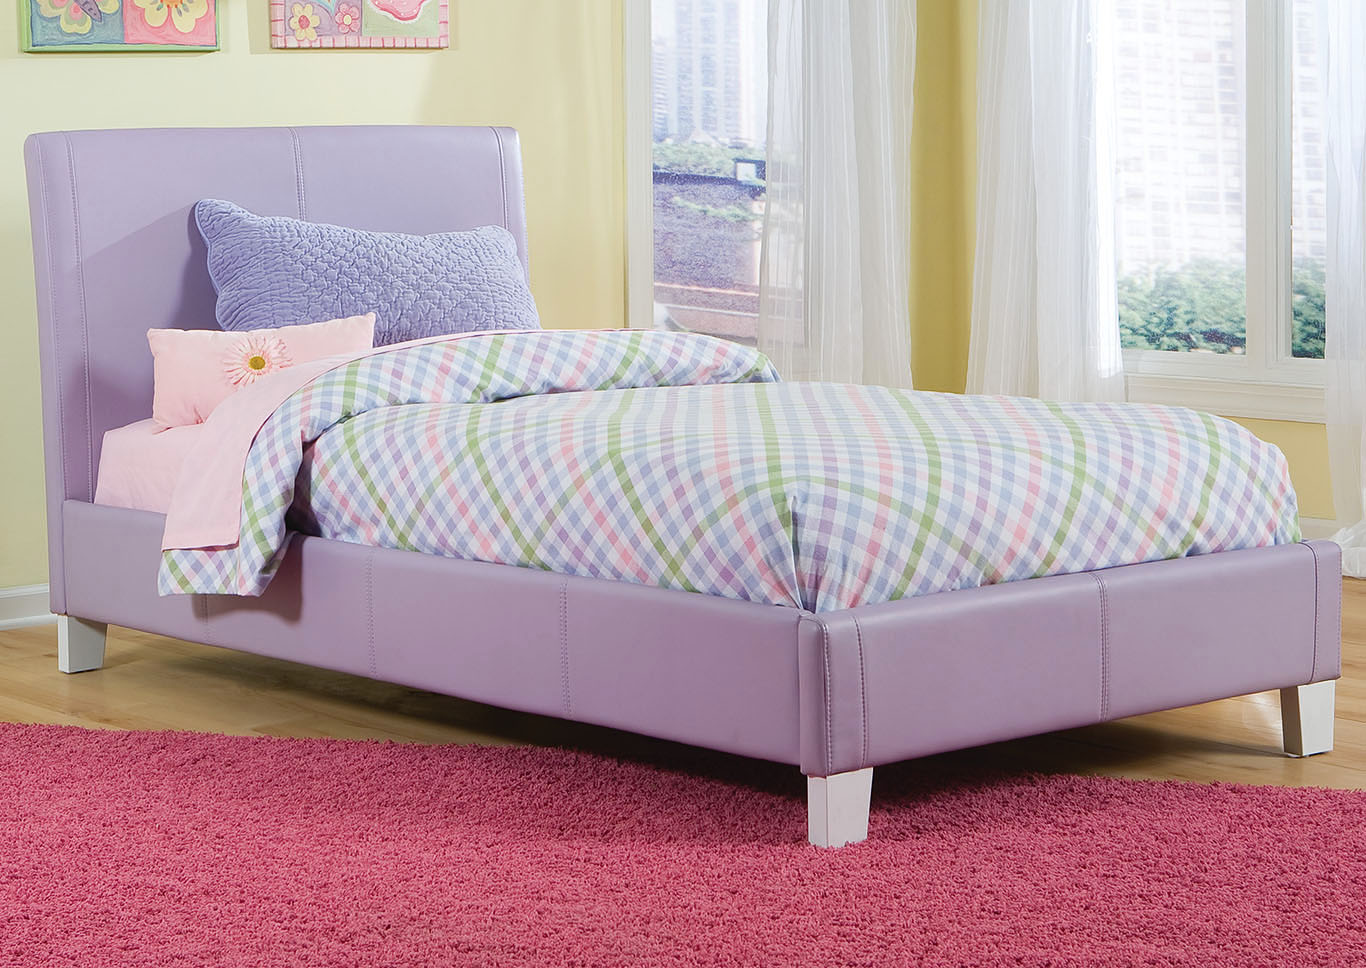 Fantasia Lavender Twin Upholstered Bed,Standard